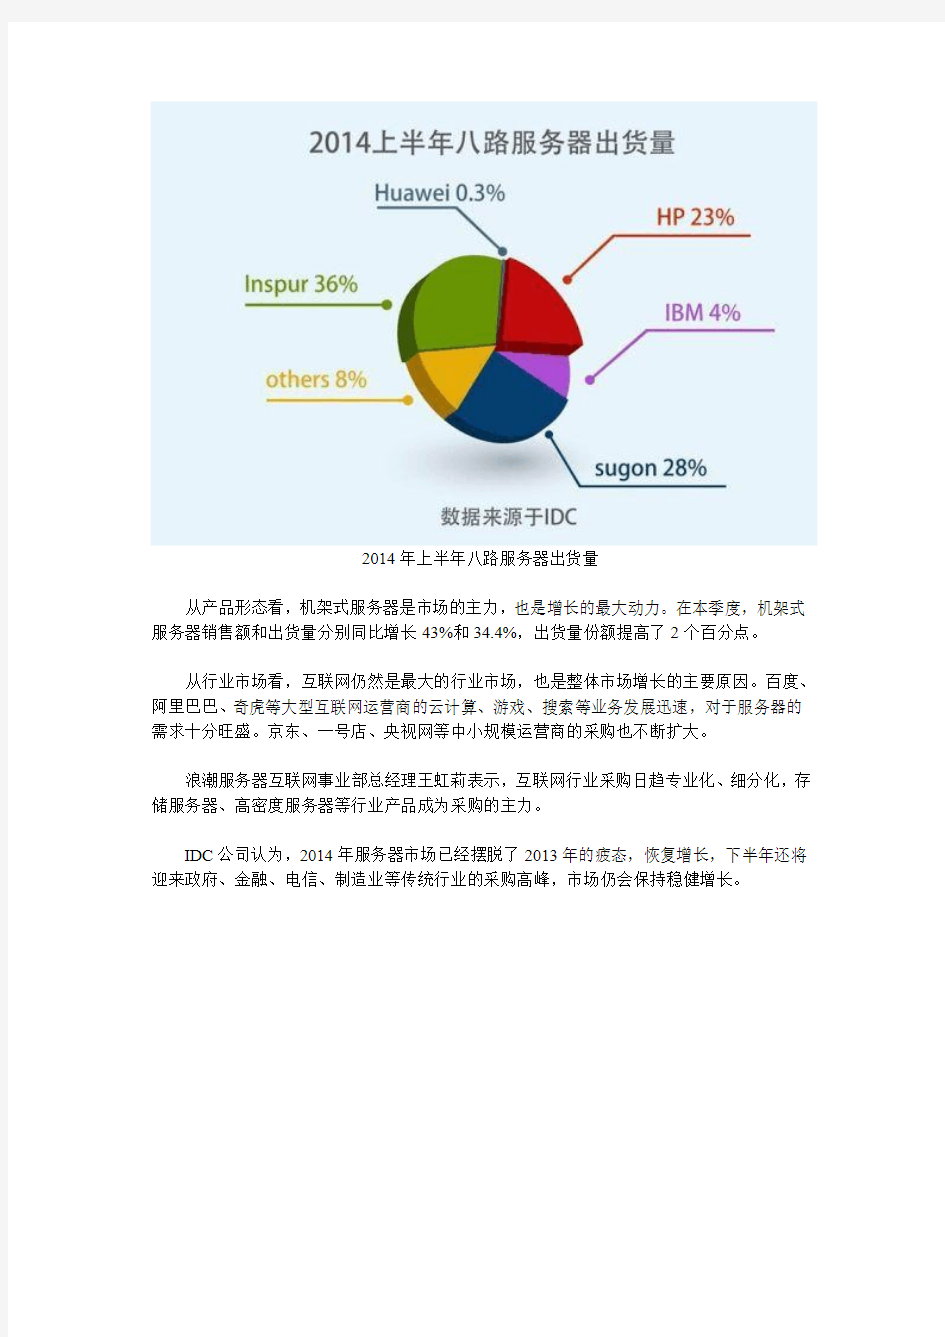 2014年Q2中国服务器市场销售额14.3亿美元 同比增35%